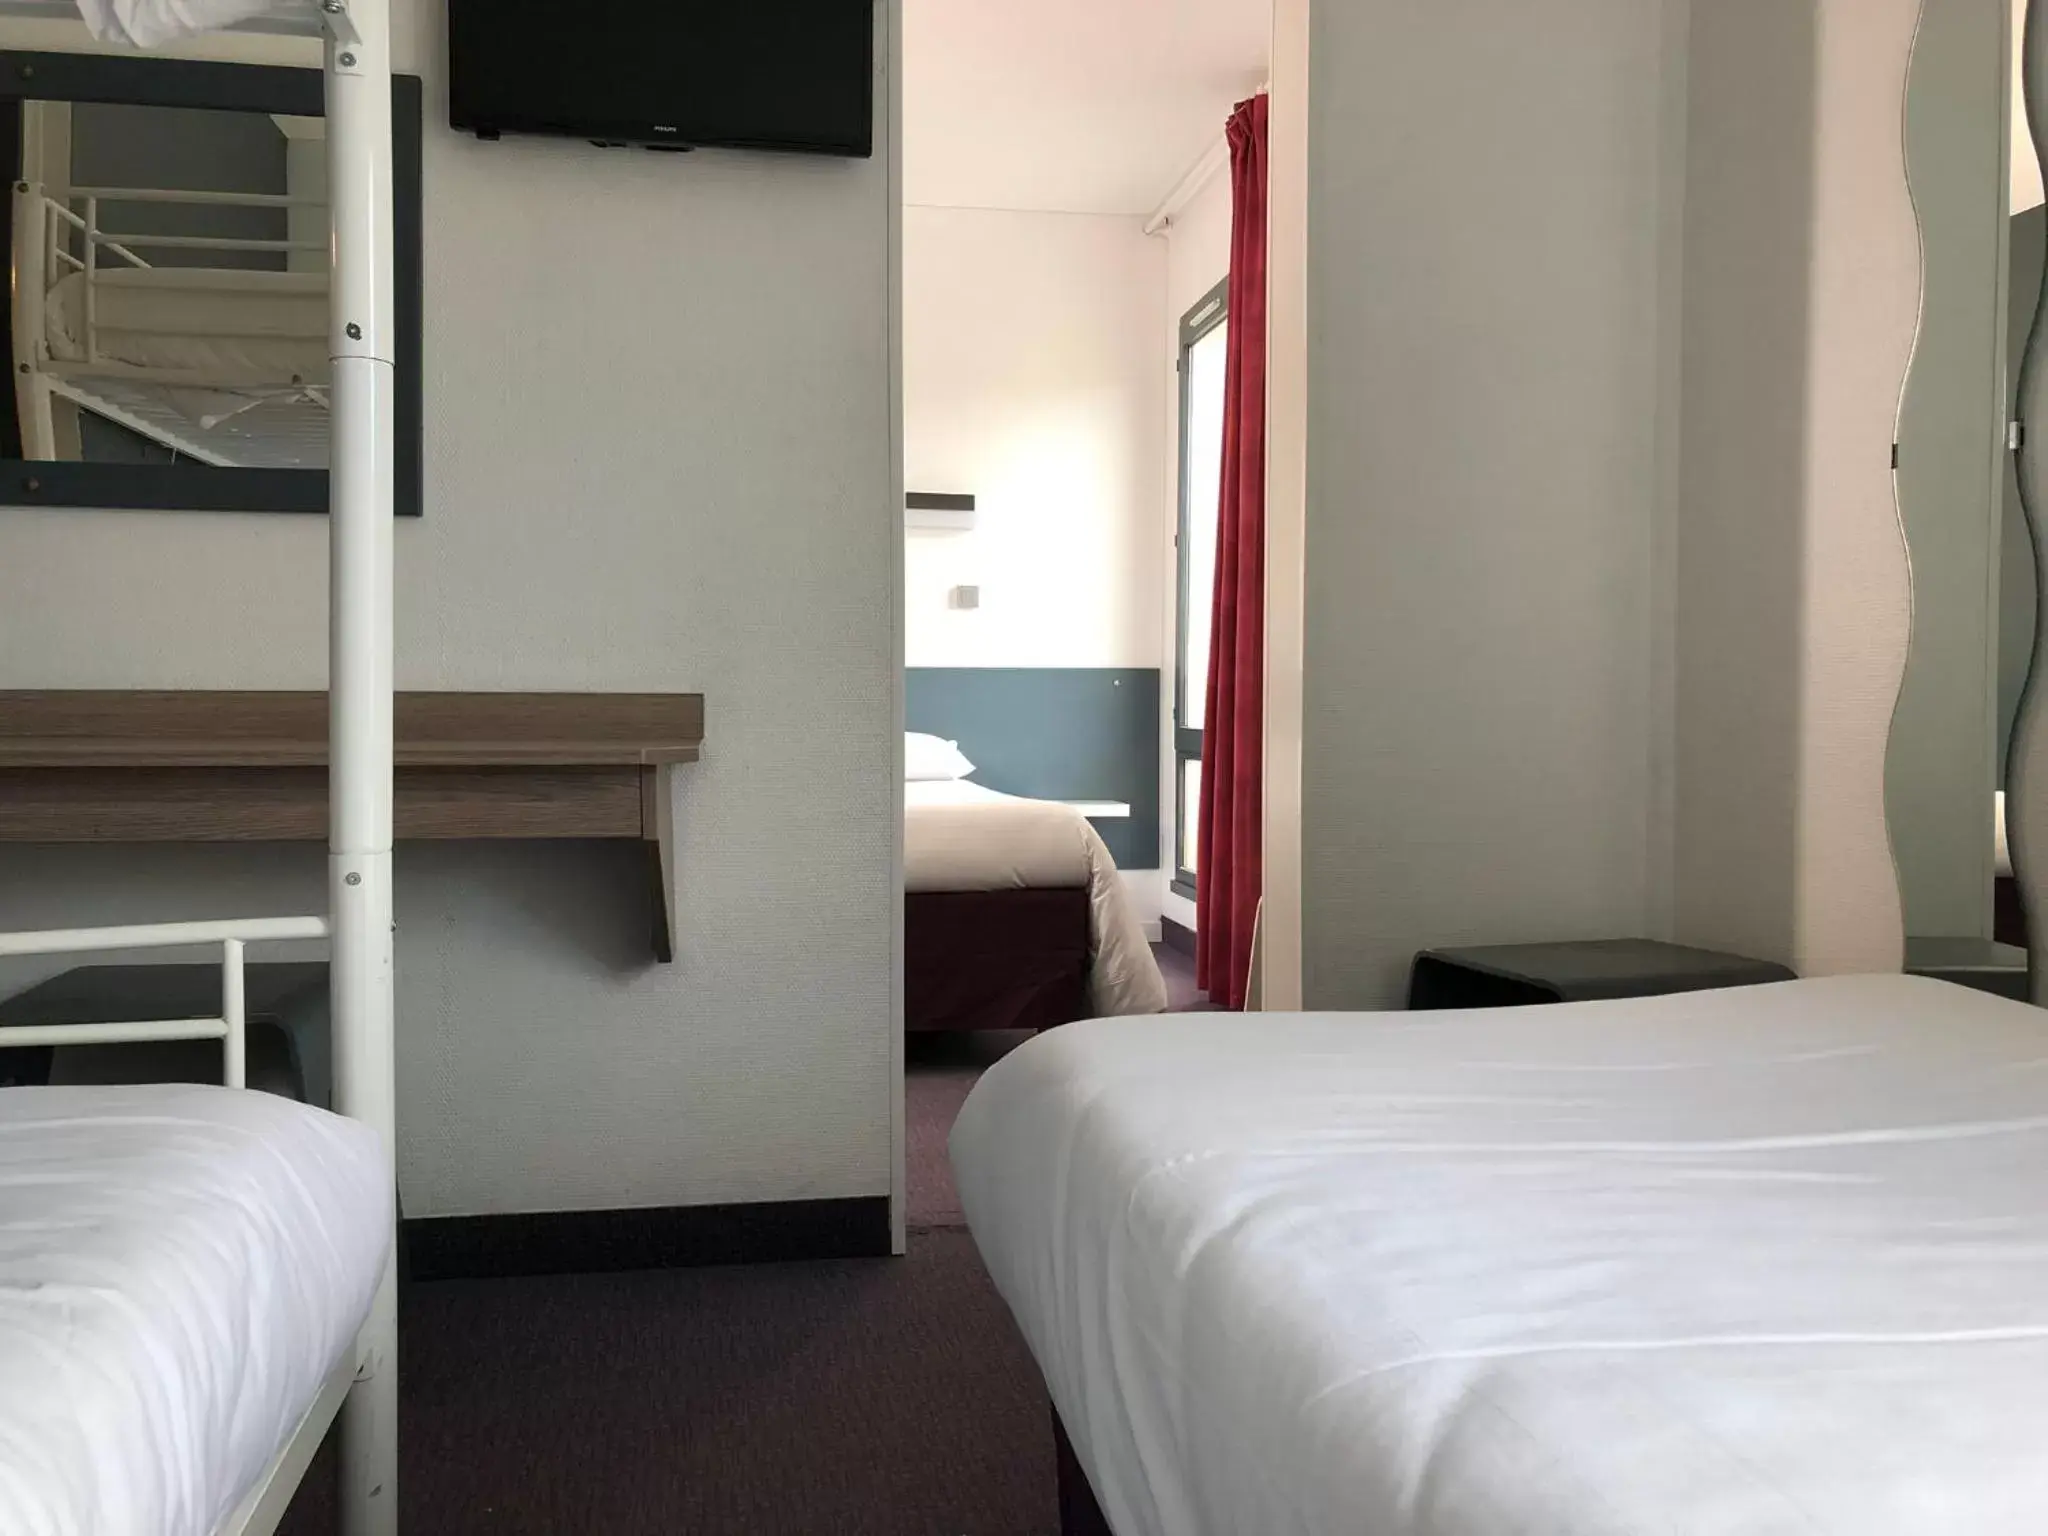 Bed in HALT HOTEL - Choisissez l'Hôtellerie Indépendante